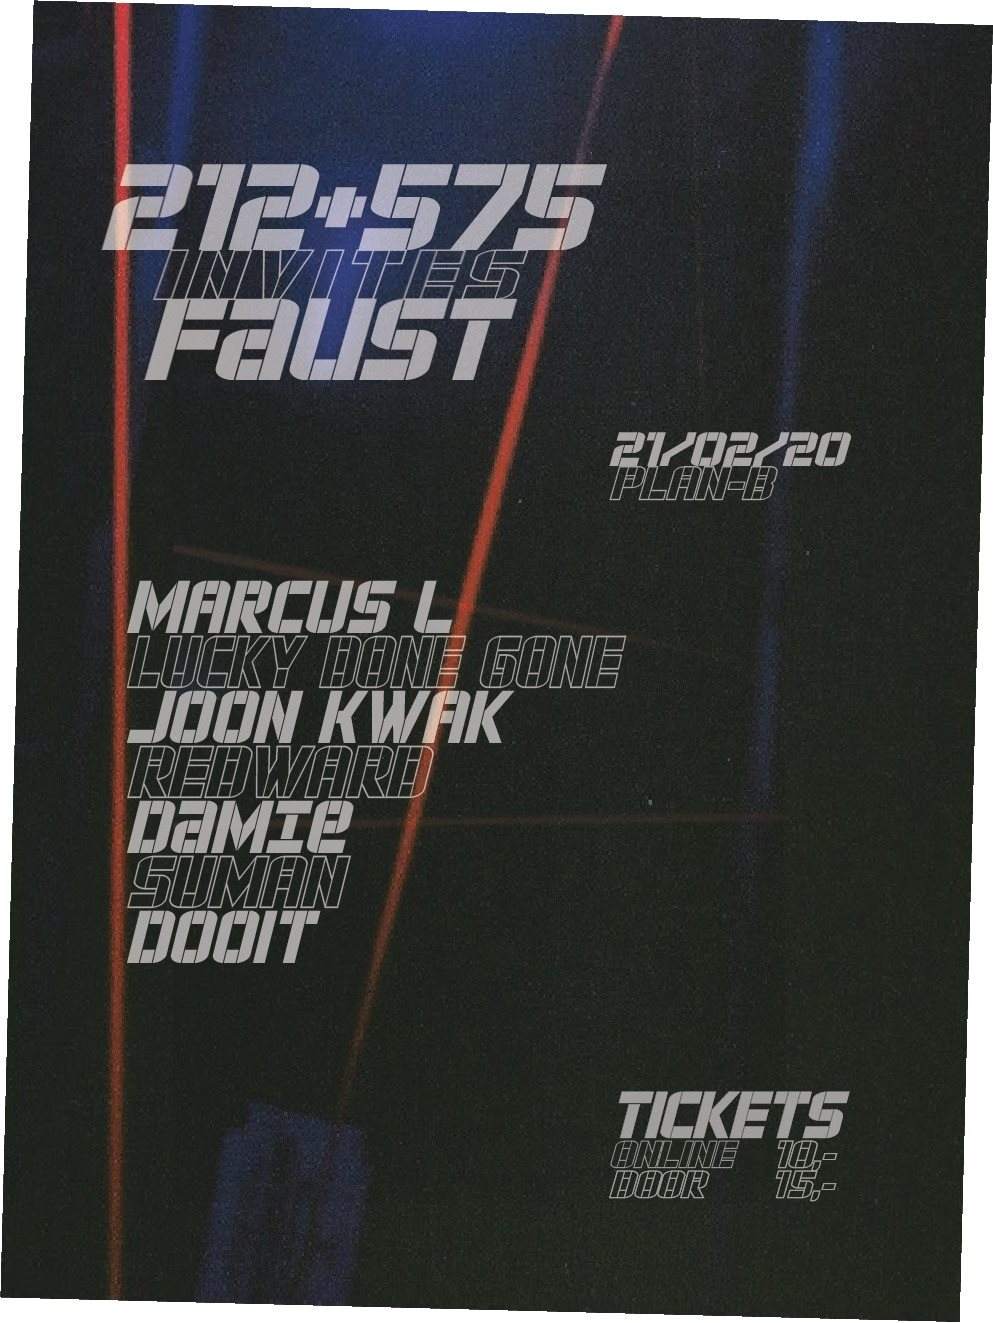 212 + 575 Invites Faust - フライヤー表